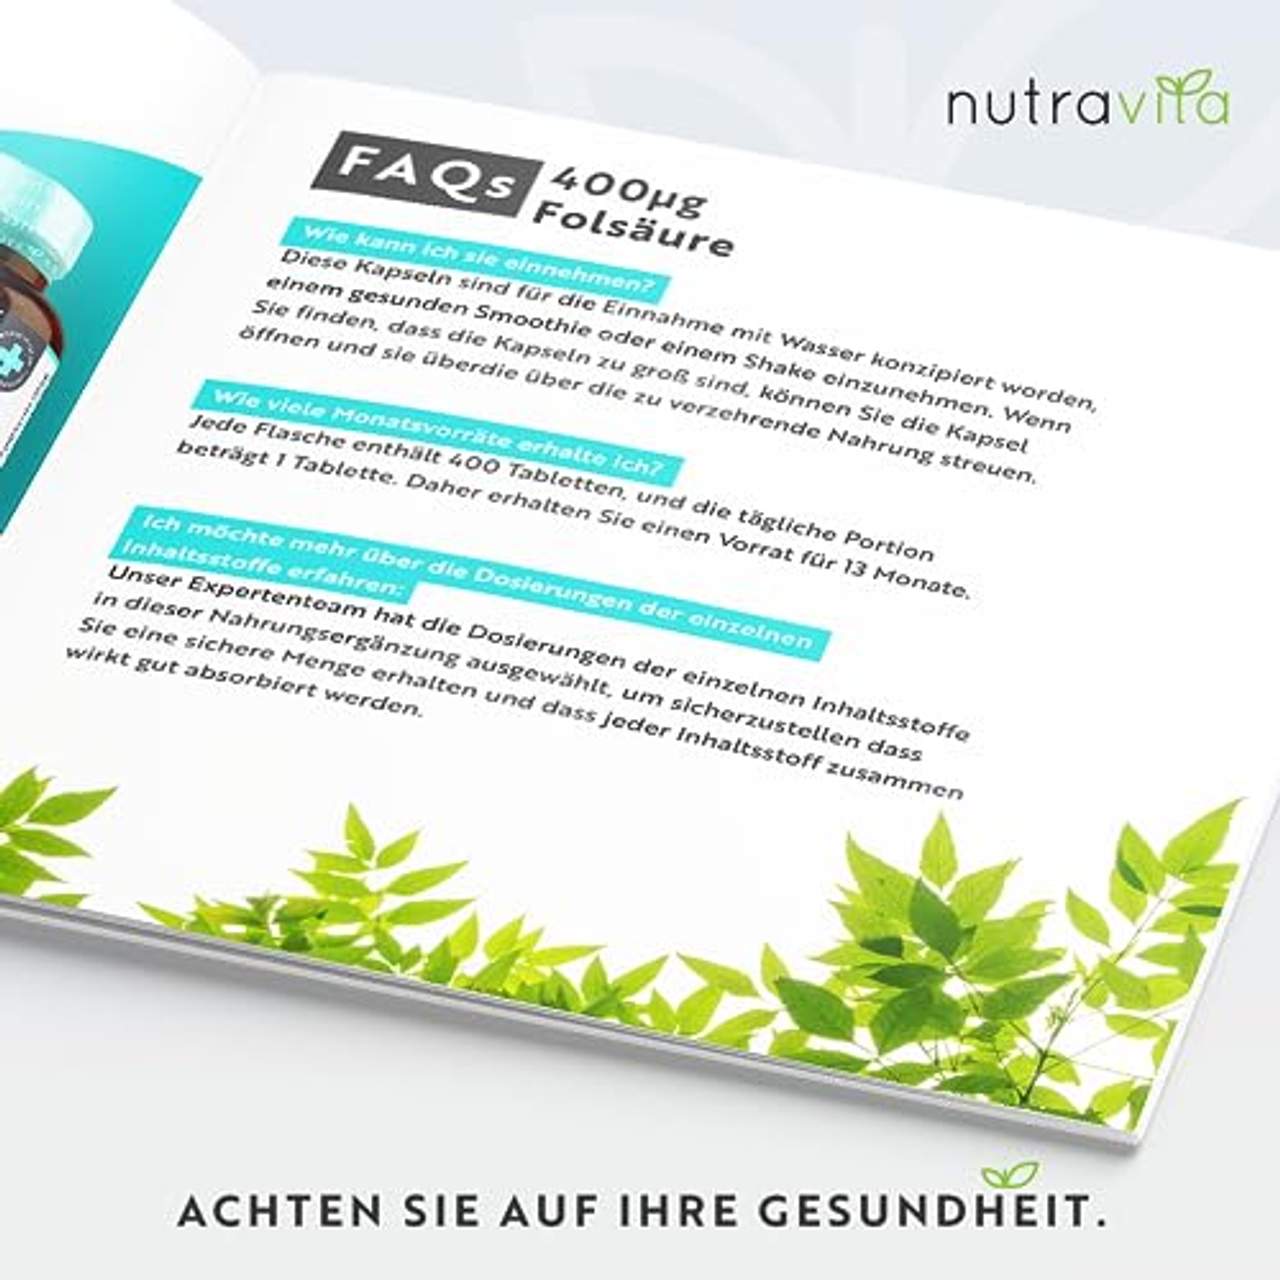 Nutravita Folsäure-Tabletten 400 mcg pro Tablette